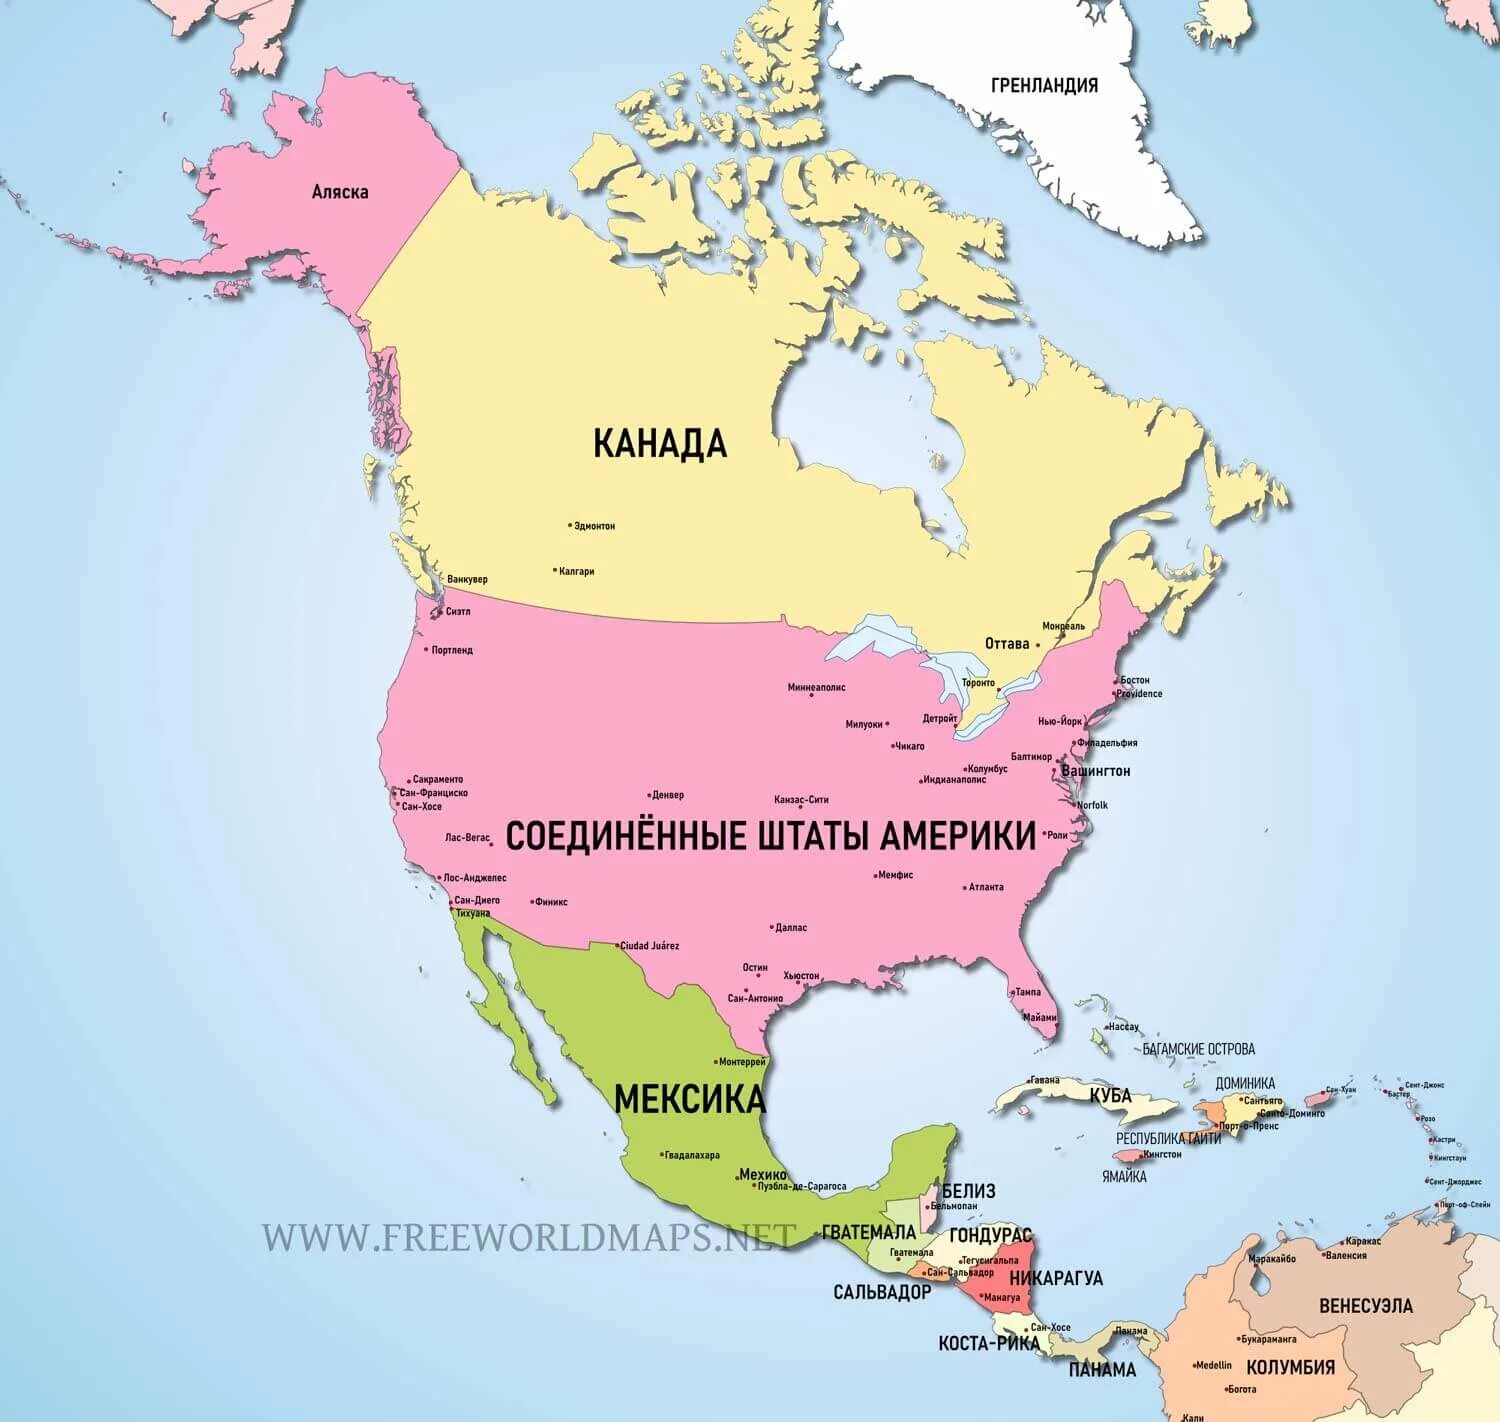 Карта Северной Америки со странами крупно на русском. Северная Америка на карте со странами и столицами на русском языке. Карта стран Северной Америки на русском языке. Северная Америка карта со странами на русском языке крупно.